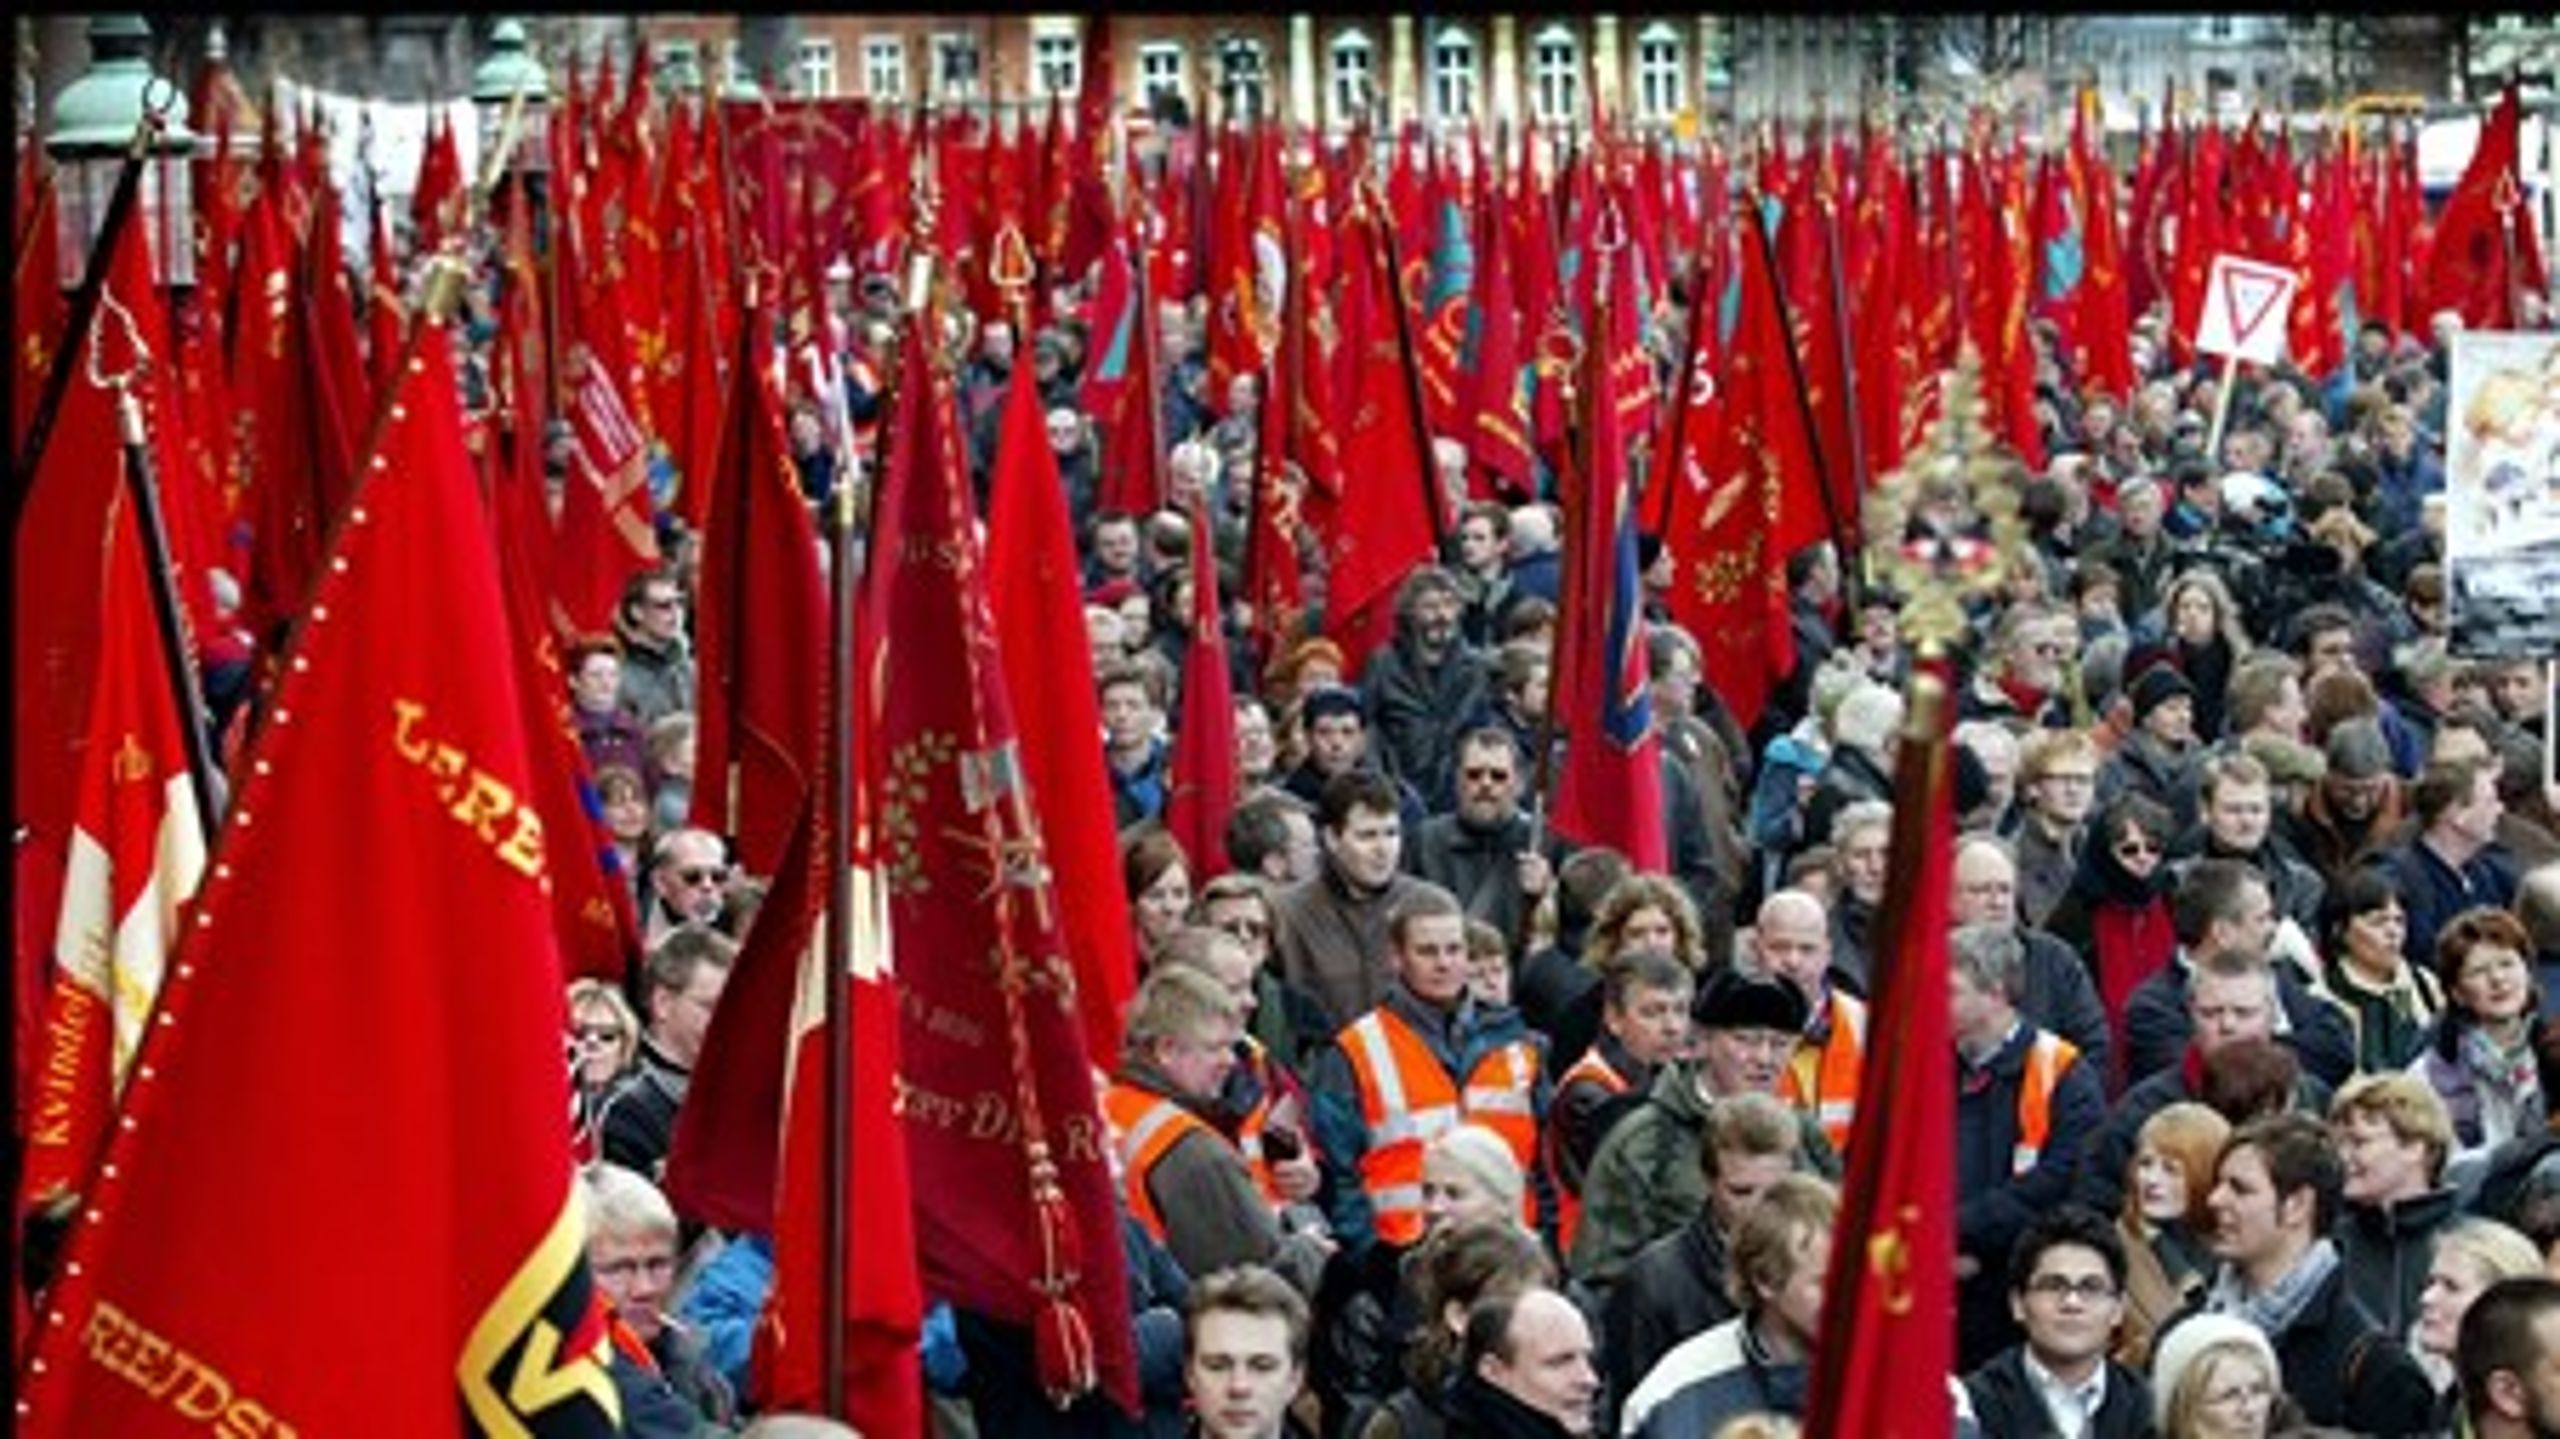 "Hvis fagforeningernes medlemstal falder, falder deres forhandlingskraft over for arbejdsgiverne også," skriver Ceveas Kristian Weise.&nbsp;